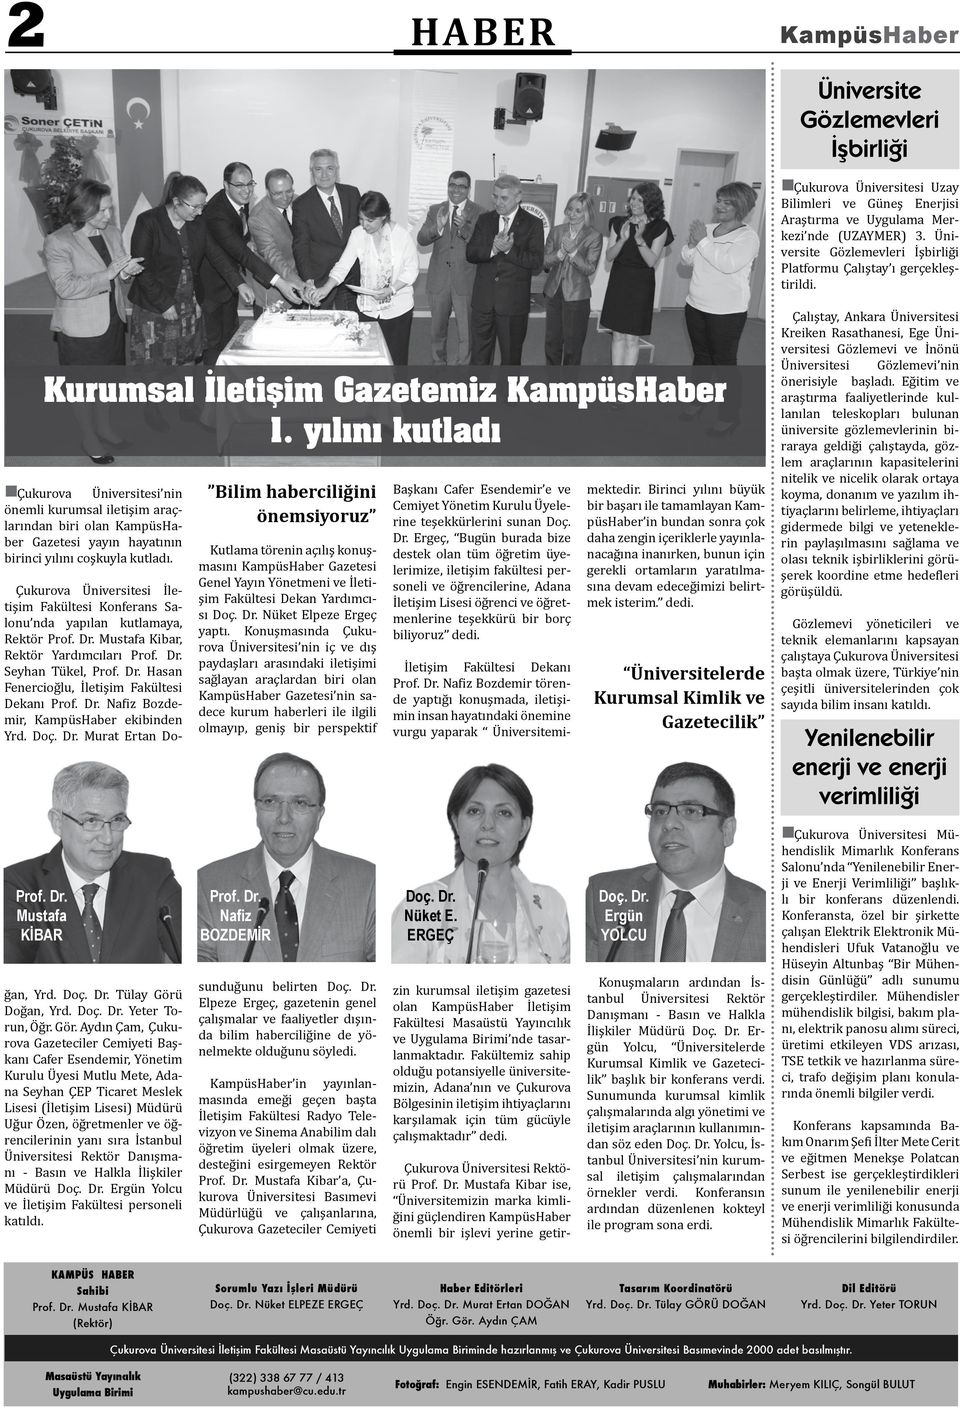 yılını kutladı Çukurova Üniversitesi nin önemli kurumsal iletişim araçlarından biri olan KampüsHaber Gazetesi yayın hayatının birinci yılını coşkuyla kutladı.